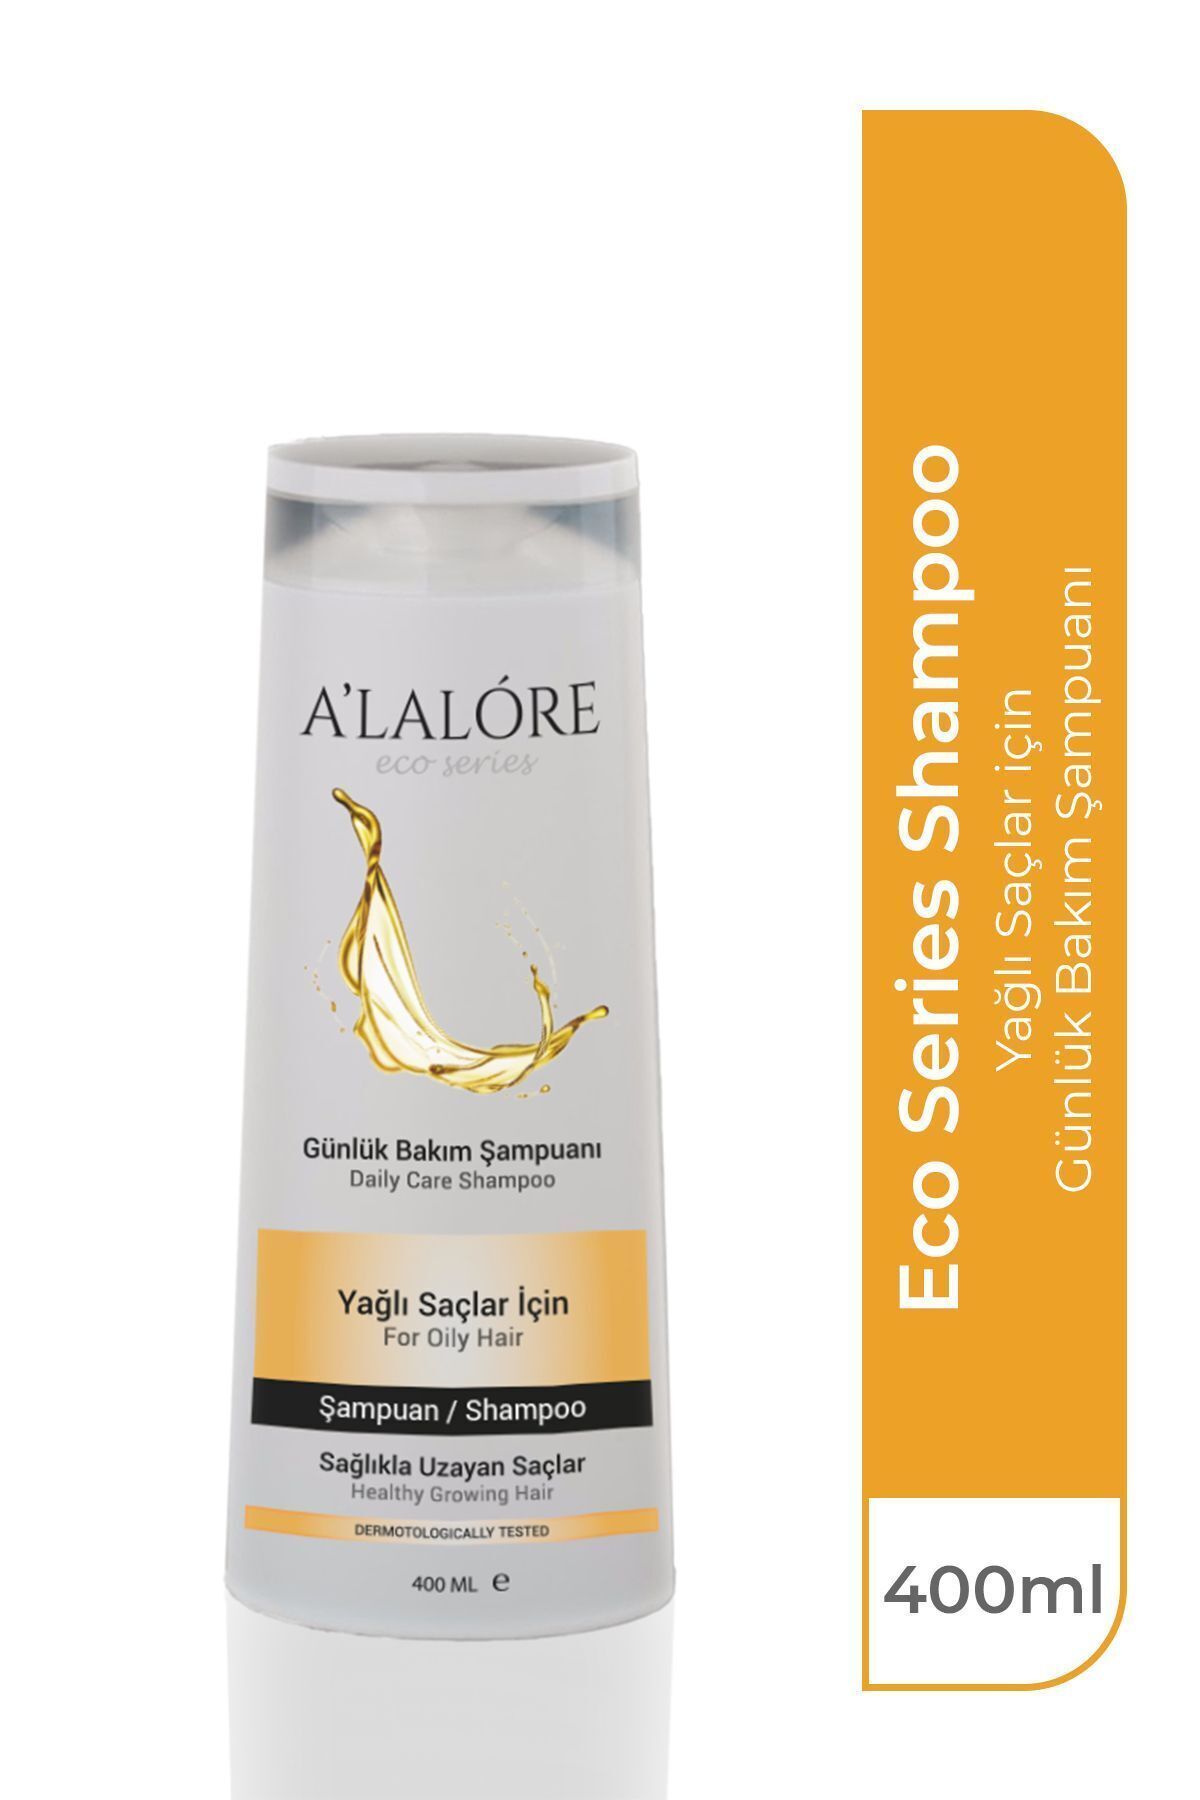 ALALORE Yağlı Saçlar Için Şampuan - 400 ml